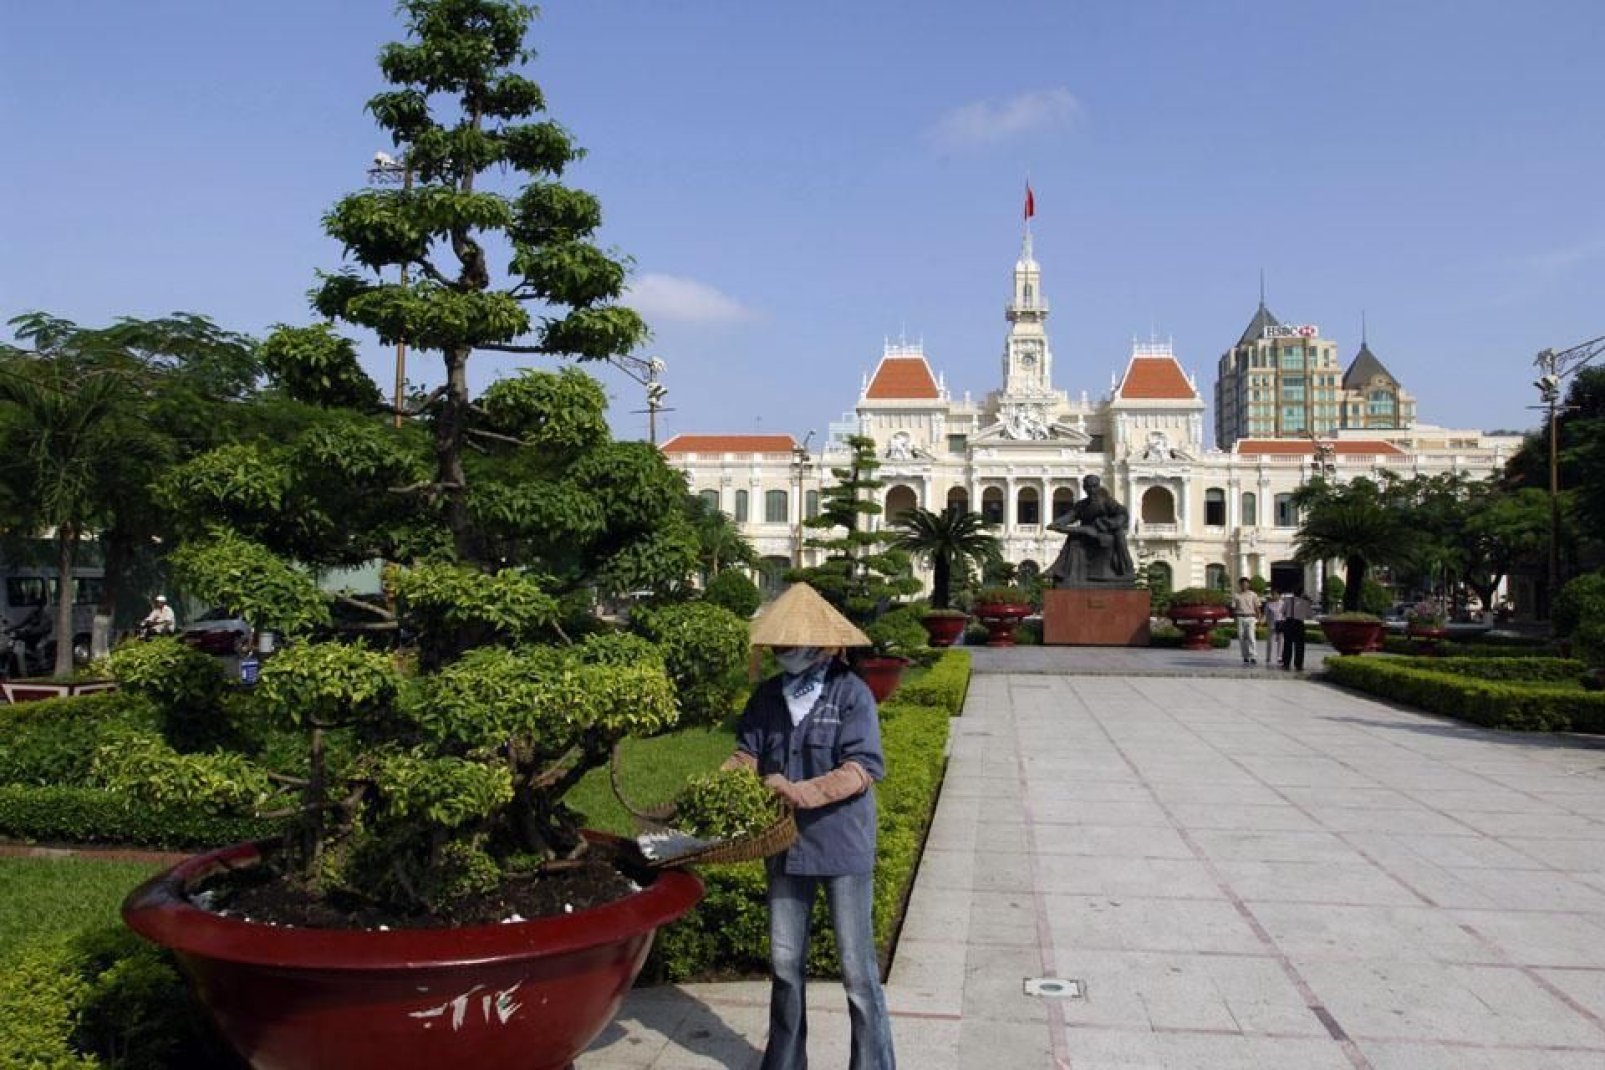 Il municipio di H? Chí Minh, costruito dai francesi tra il 1902 e il 1908, è uno splendido esempio dell'architettura coloniale francese.